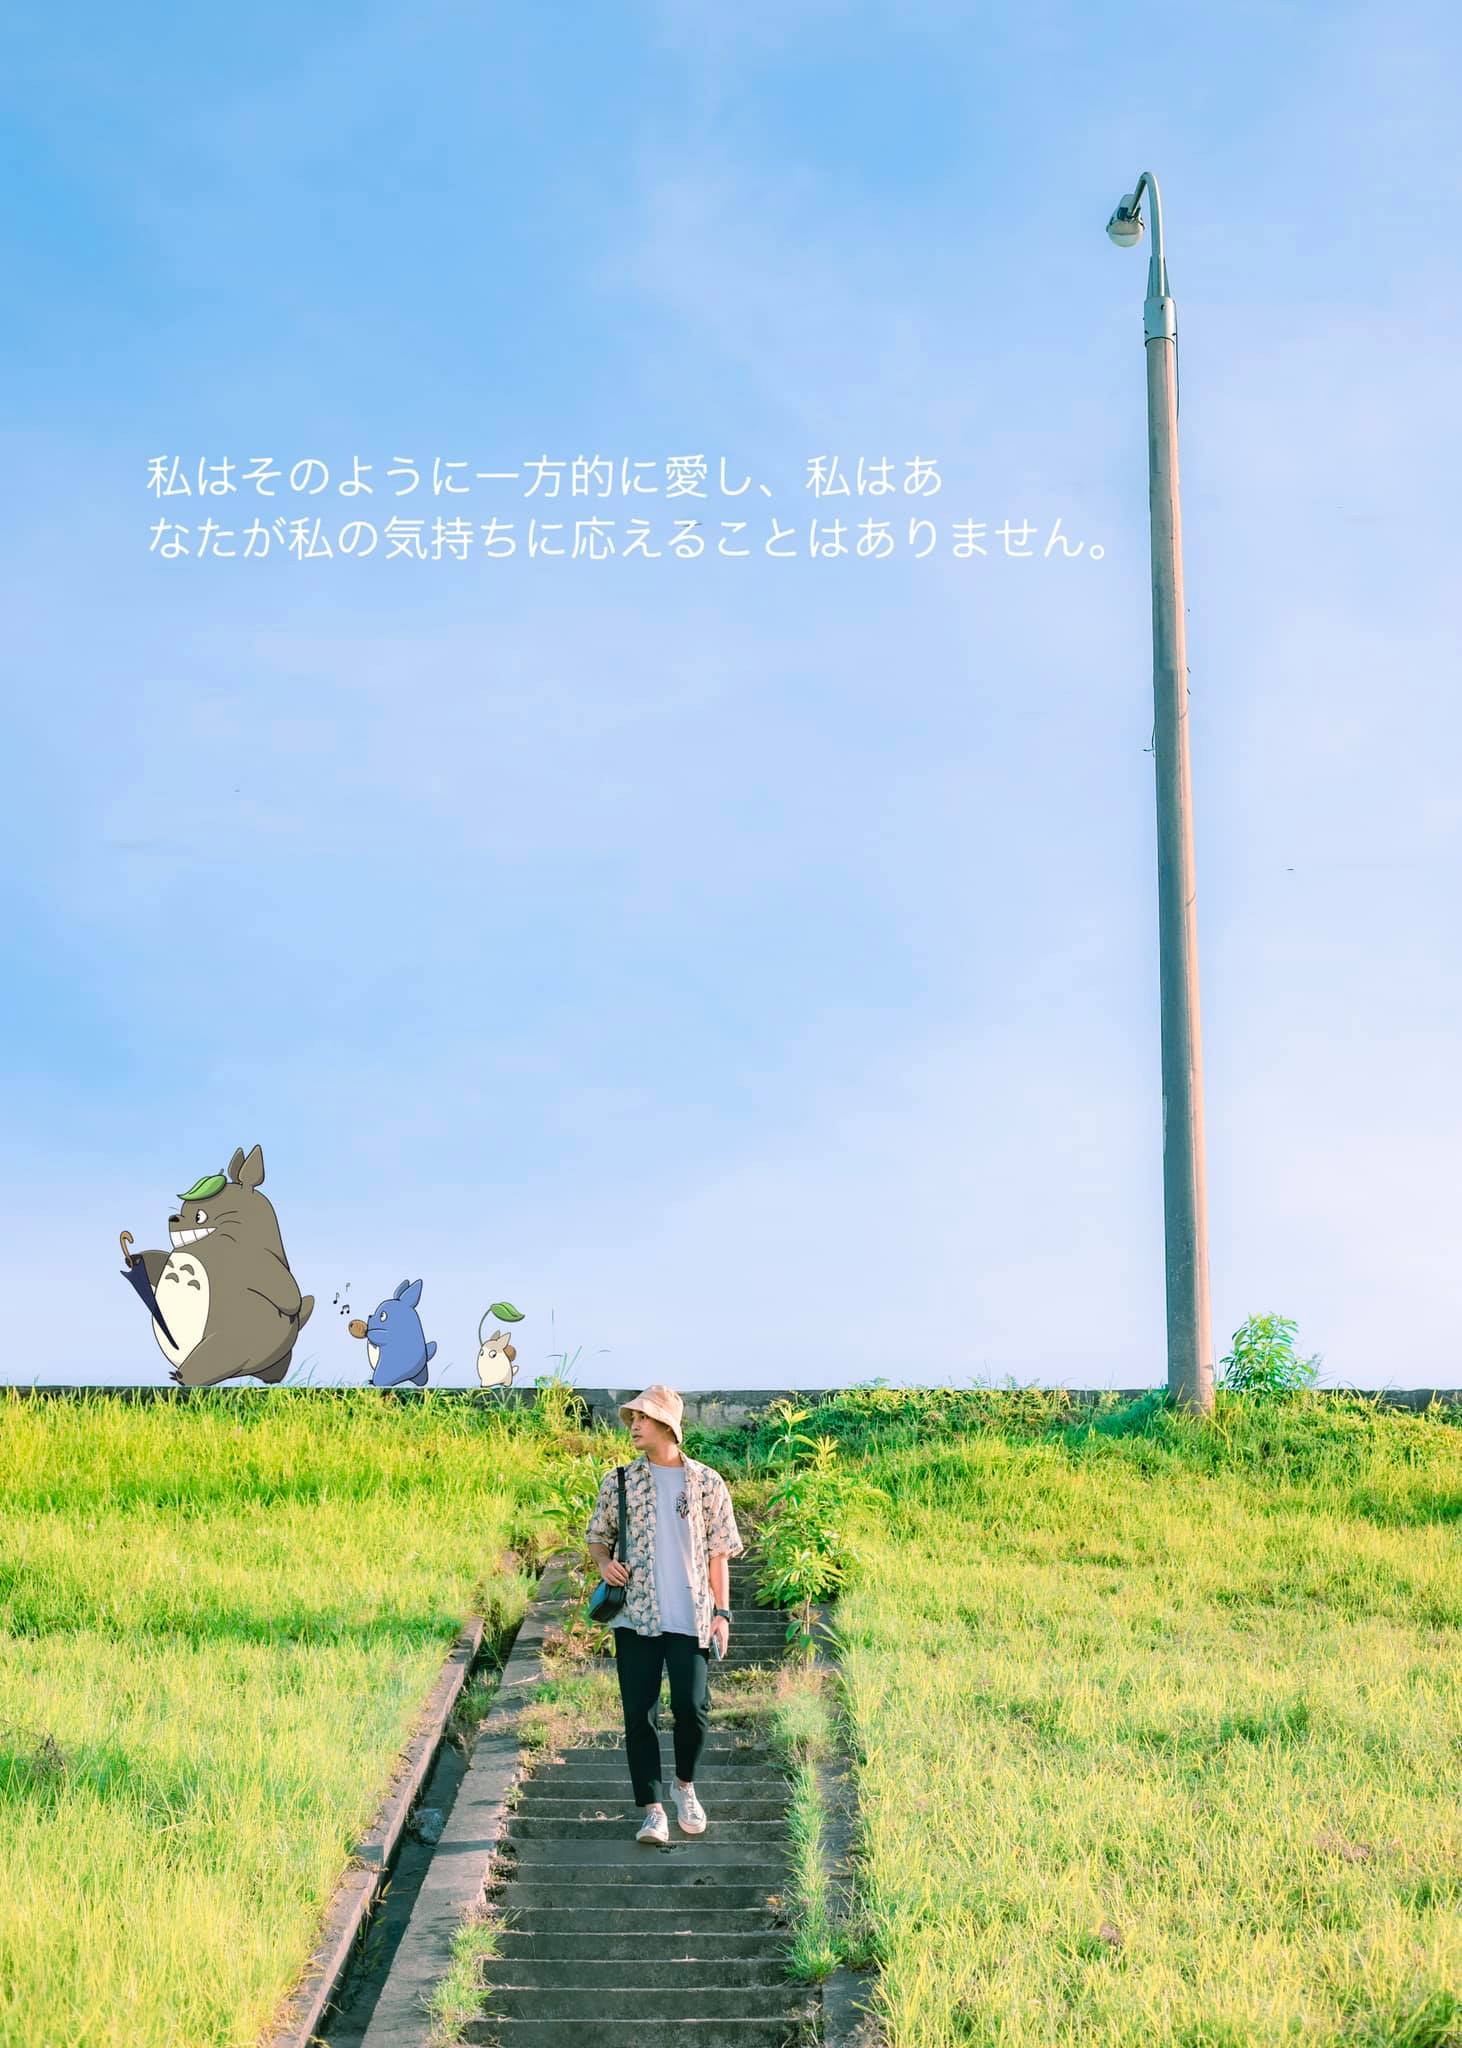 triền cỏ xanh như phim anime Nhật Bản ở gần Hà Nội